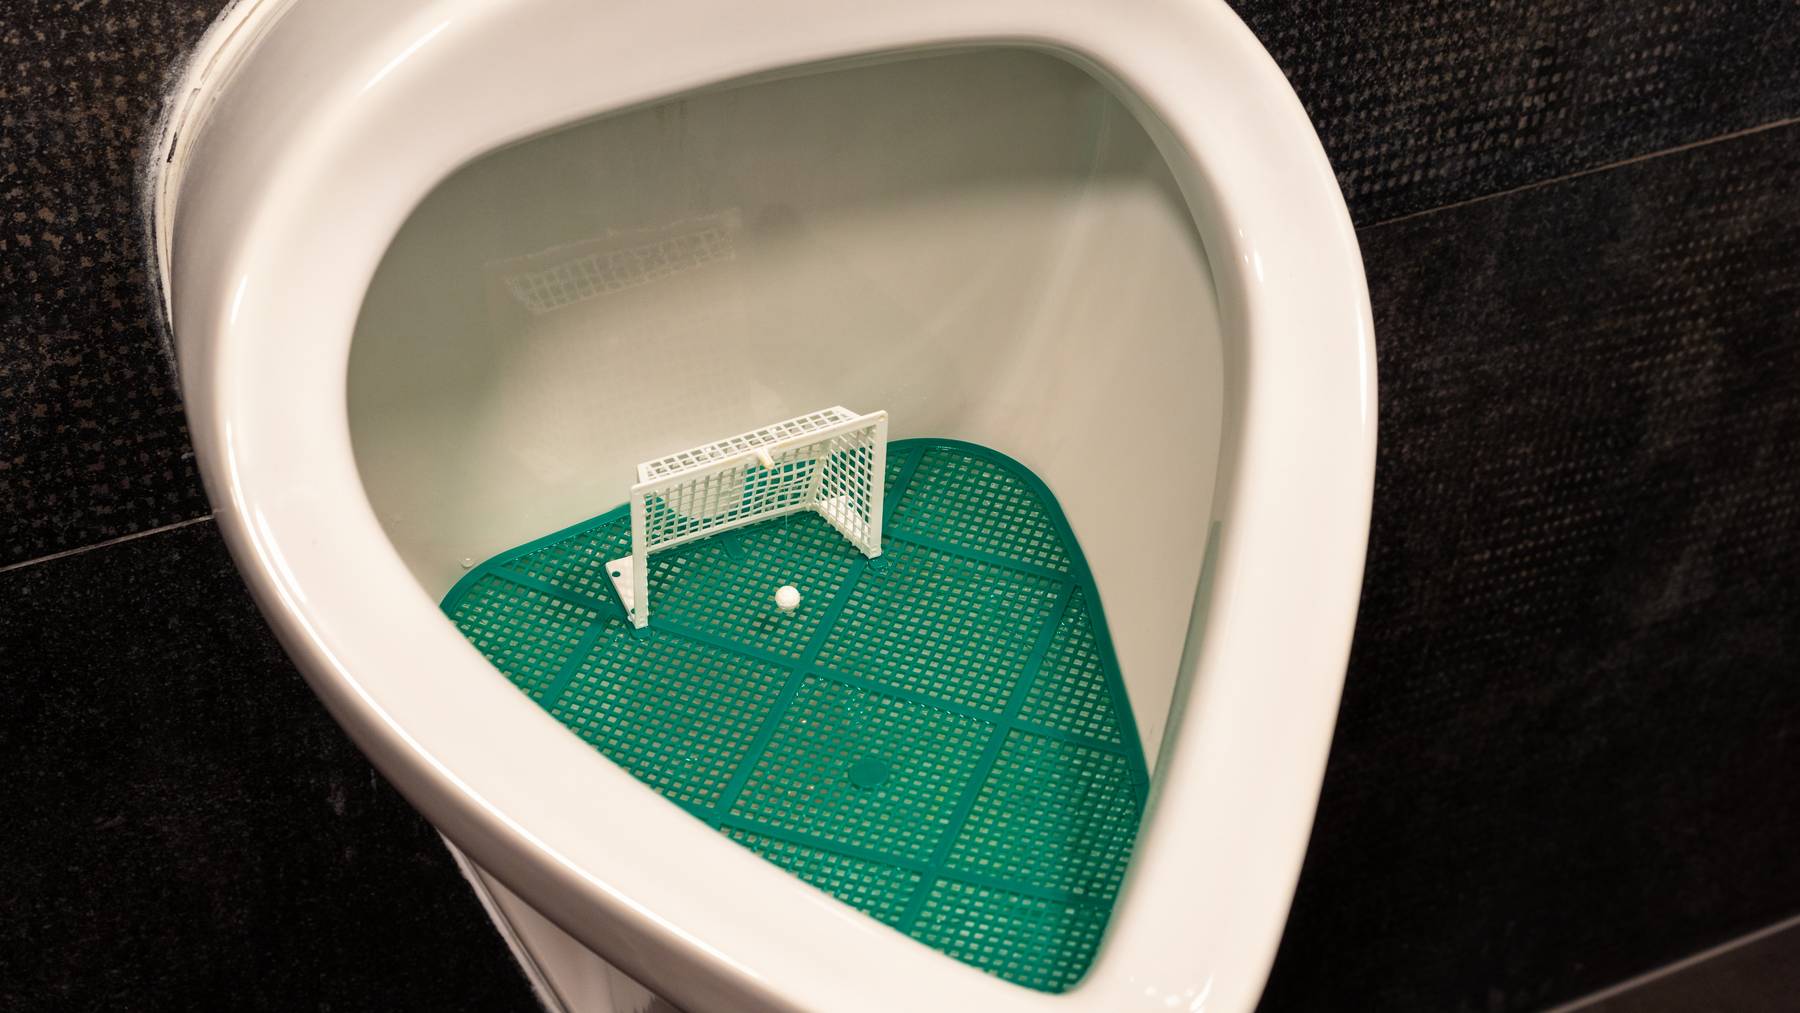 Fussballtor-Klo Pissoir Toilette Fussball Stadion WC Pinkeln Symbolbild